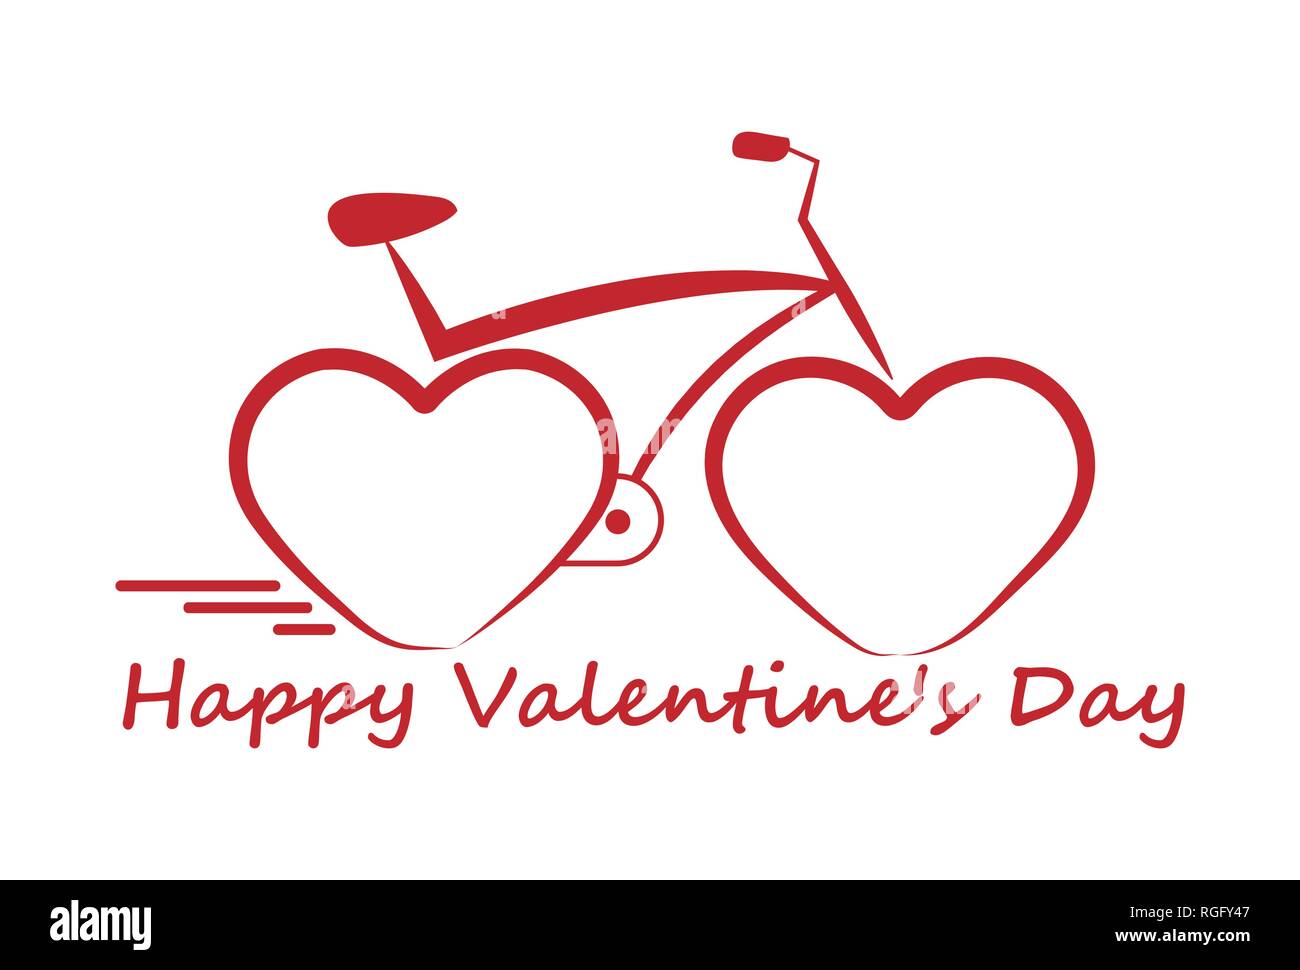 Fahrrad mit Herzen anstelle der Räder, Valentinstag. Stock Vektor